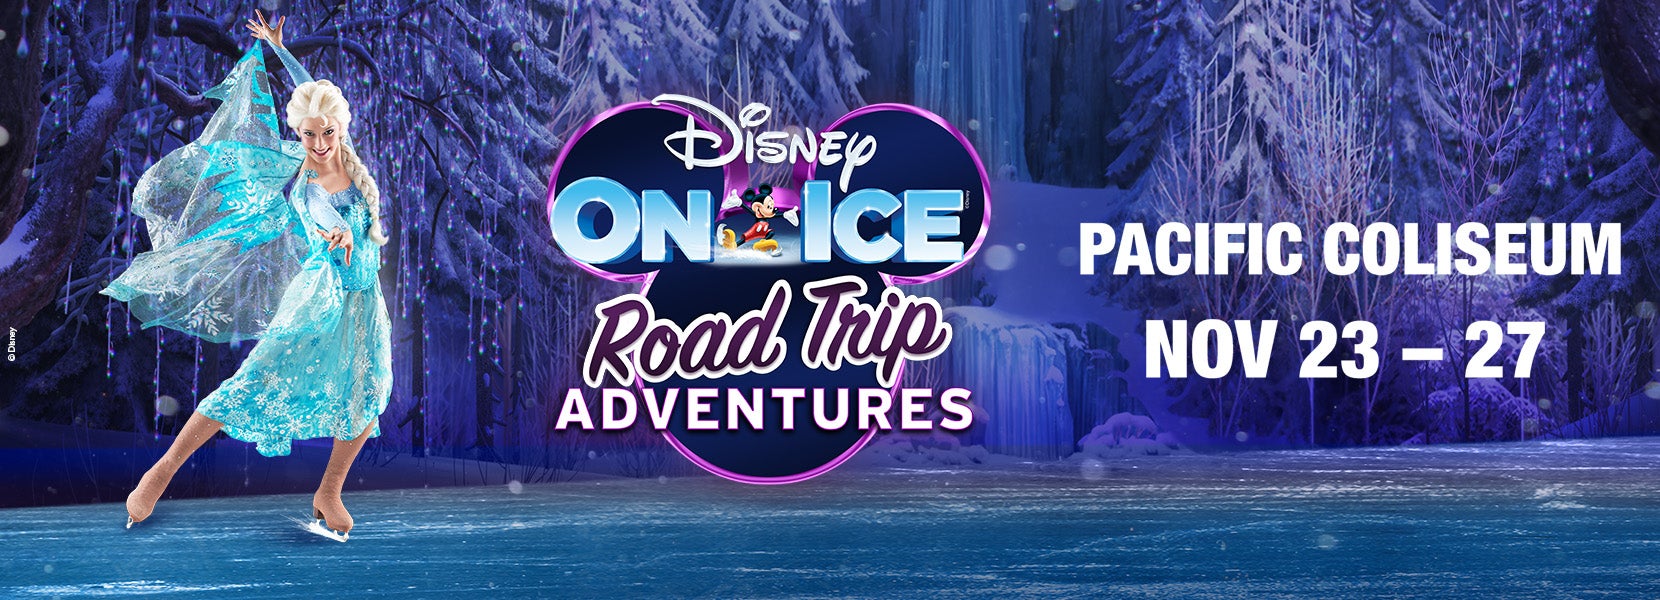 Disney On Ice presents: Road Trip Adventures